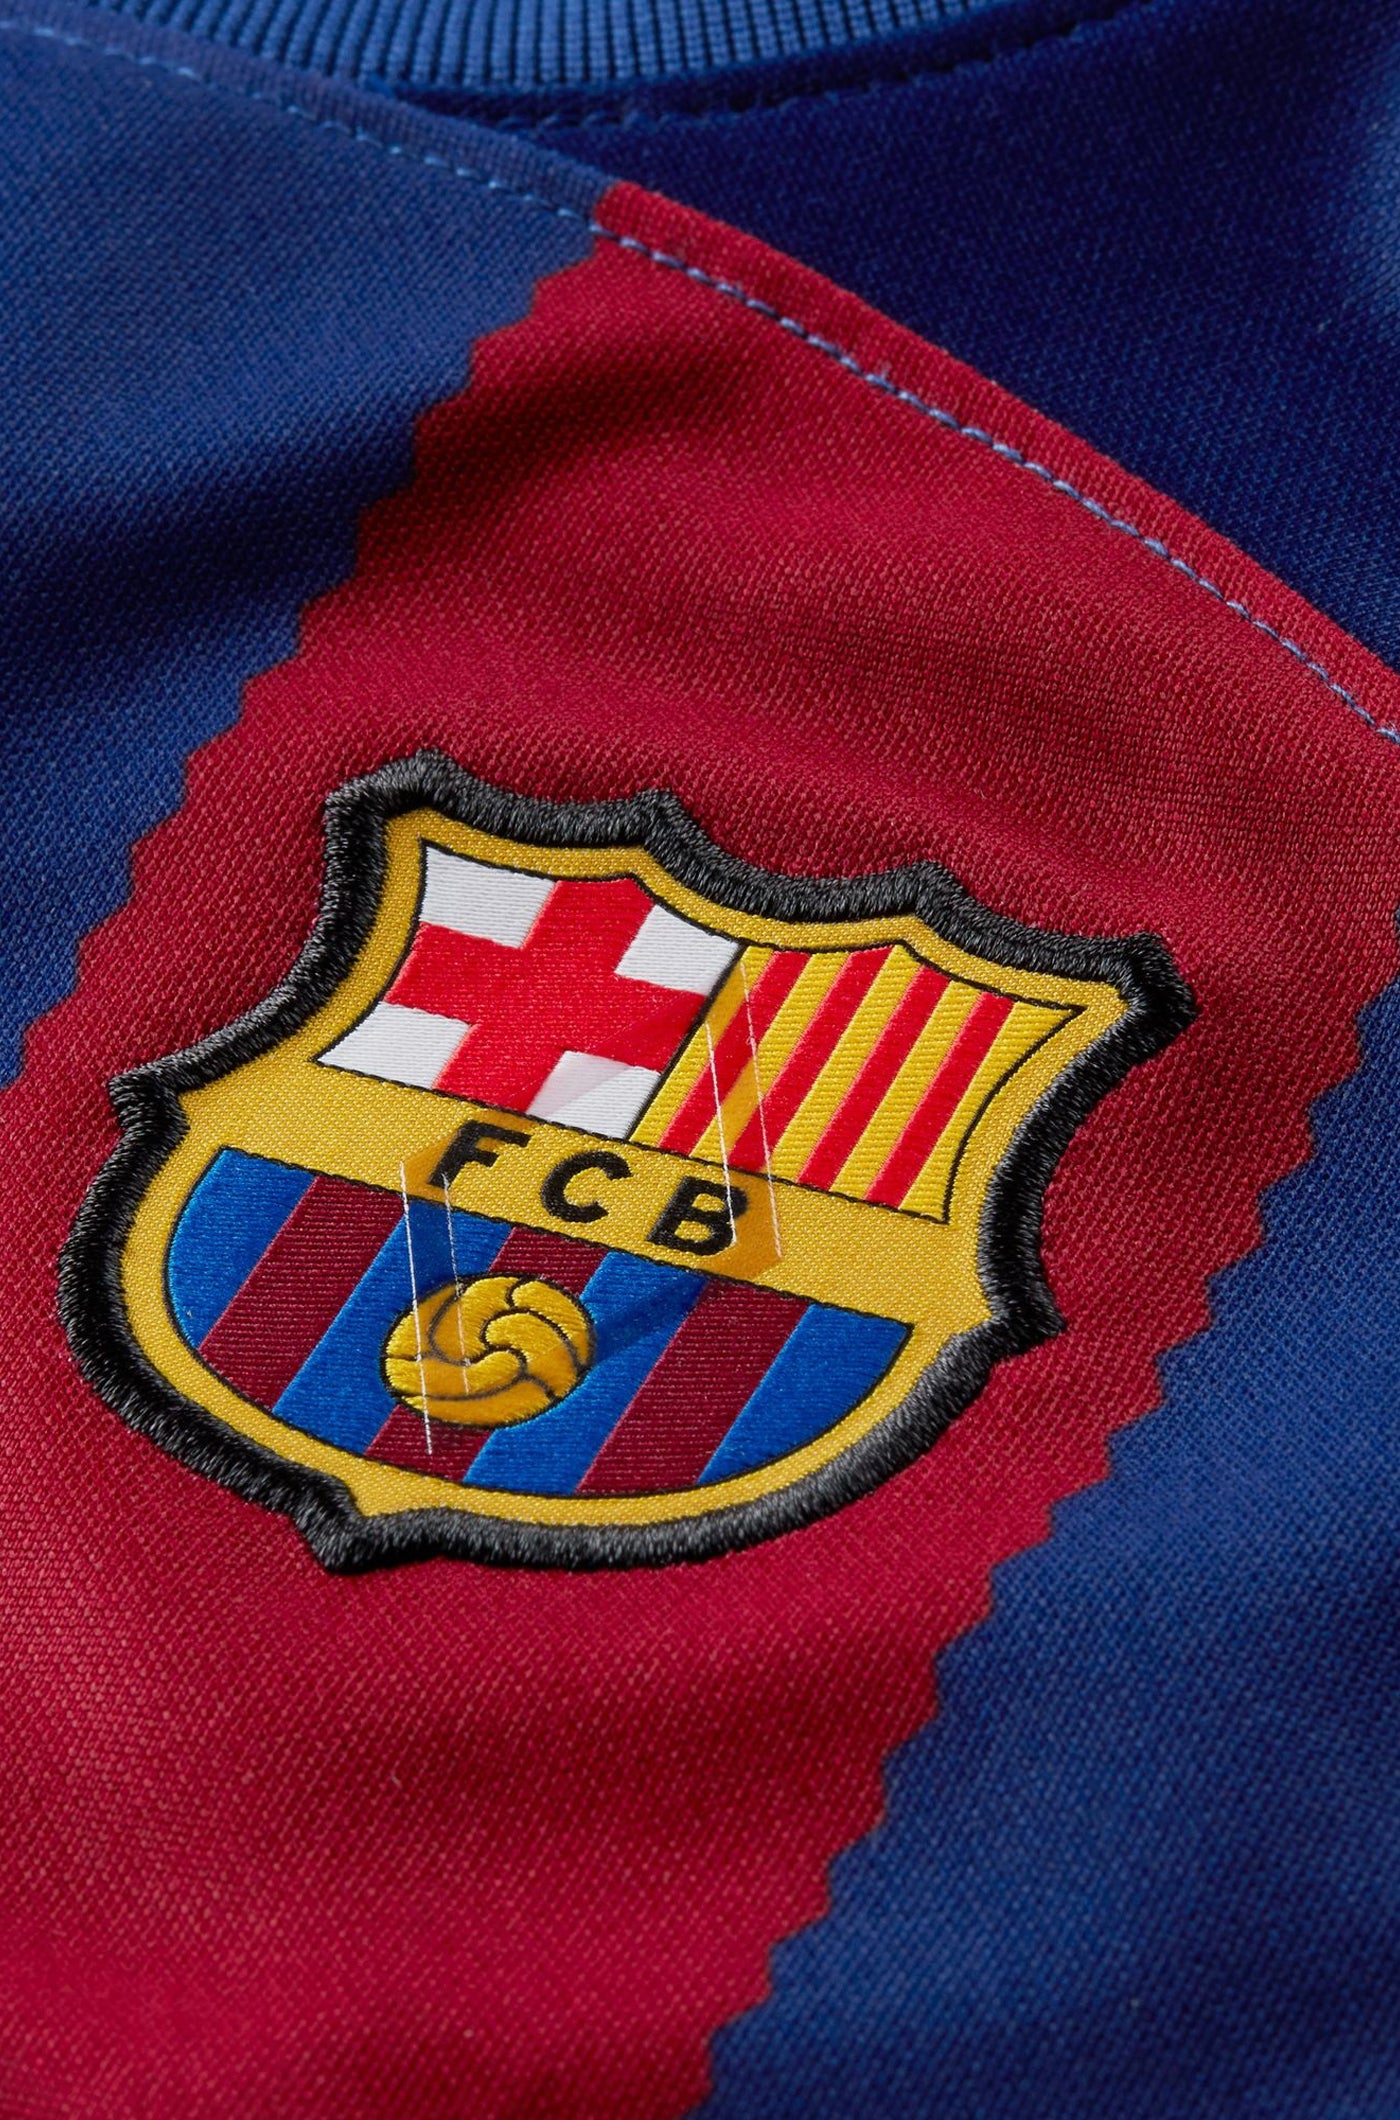 Conjunt primer equipament FC Barcelona 23/24 - Nadó 